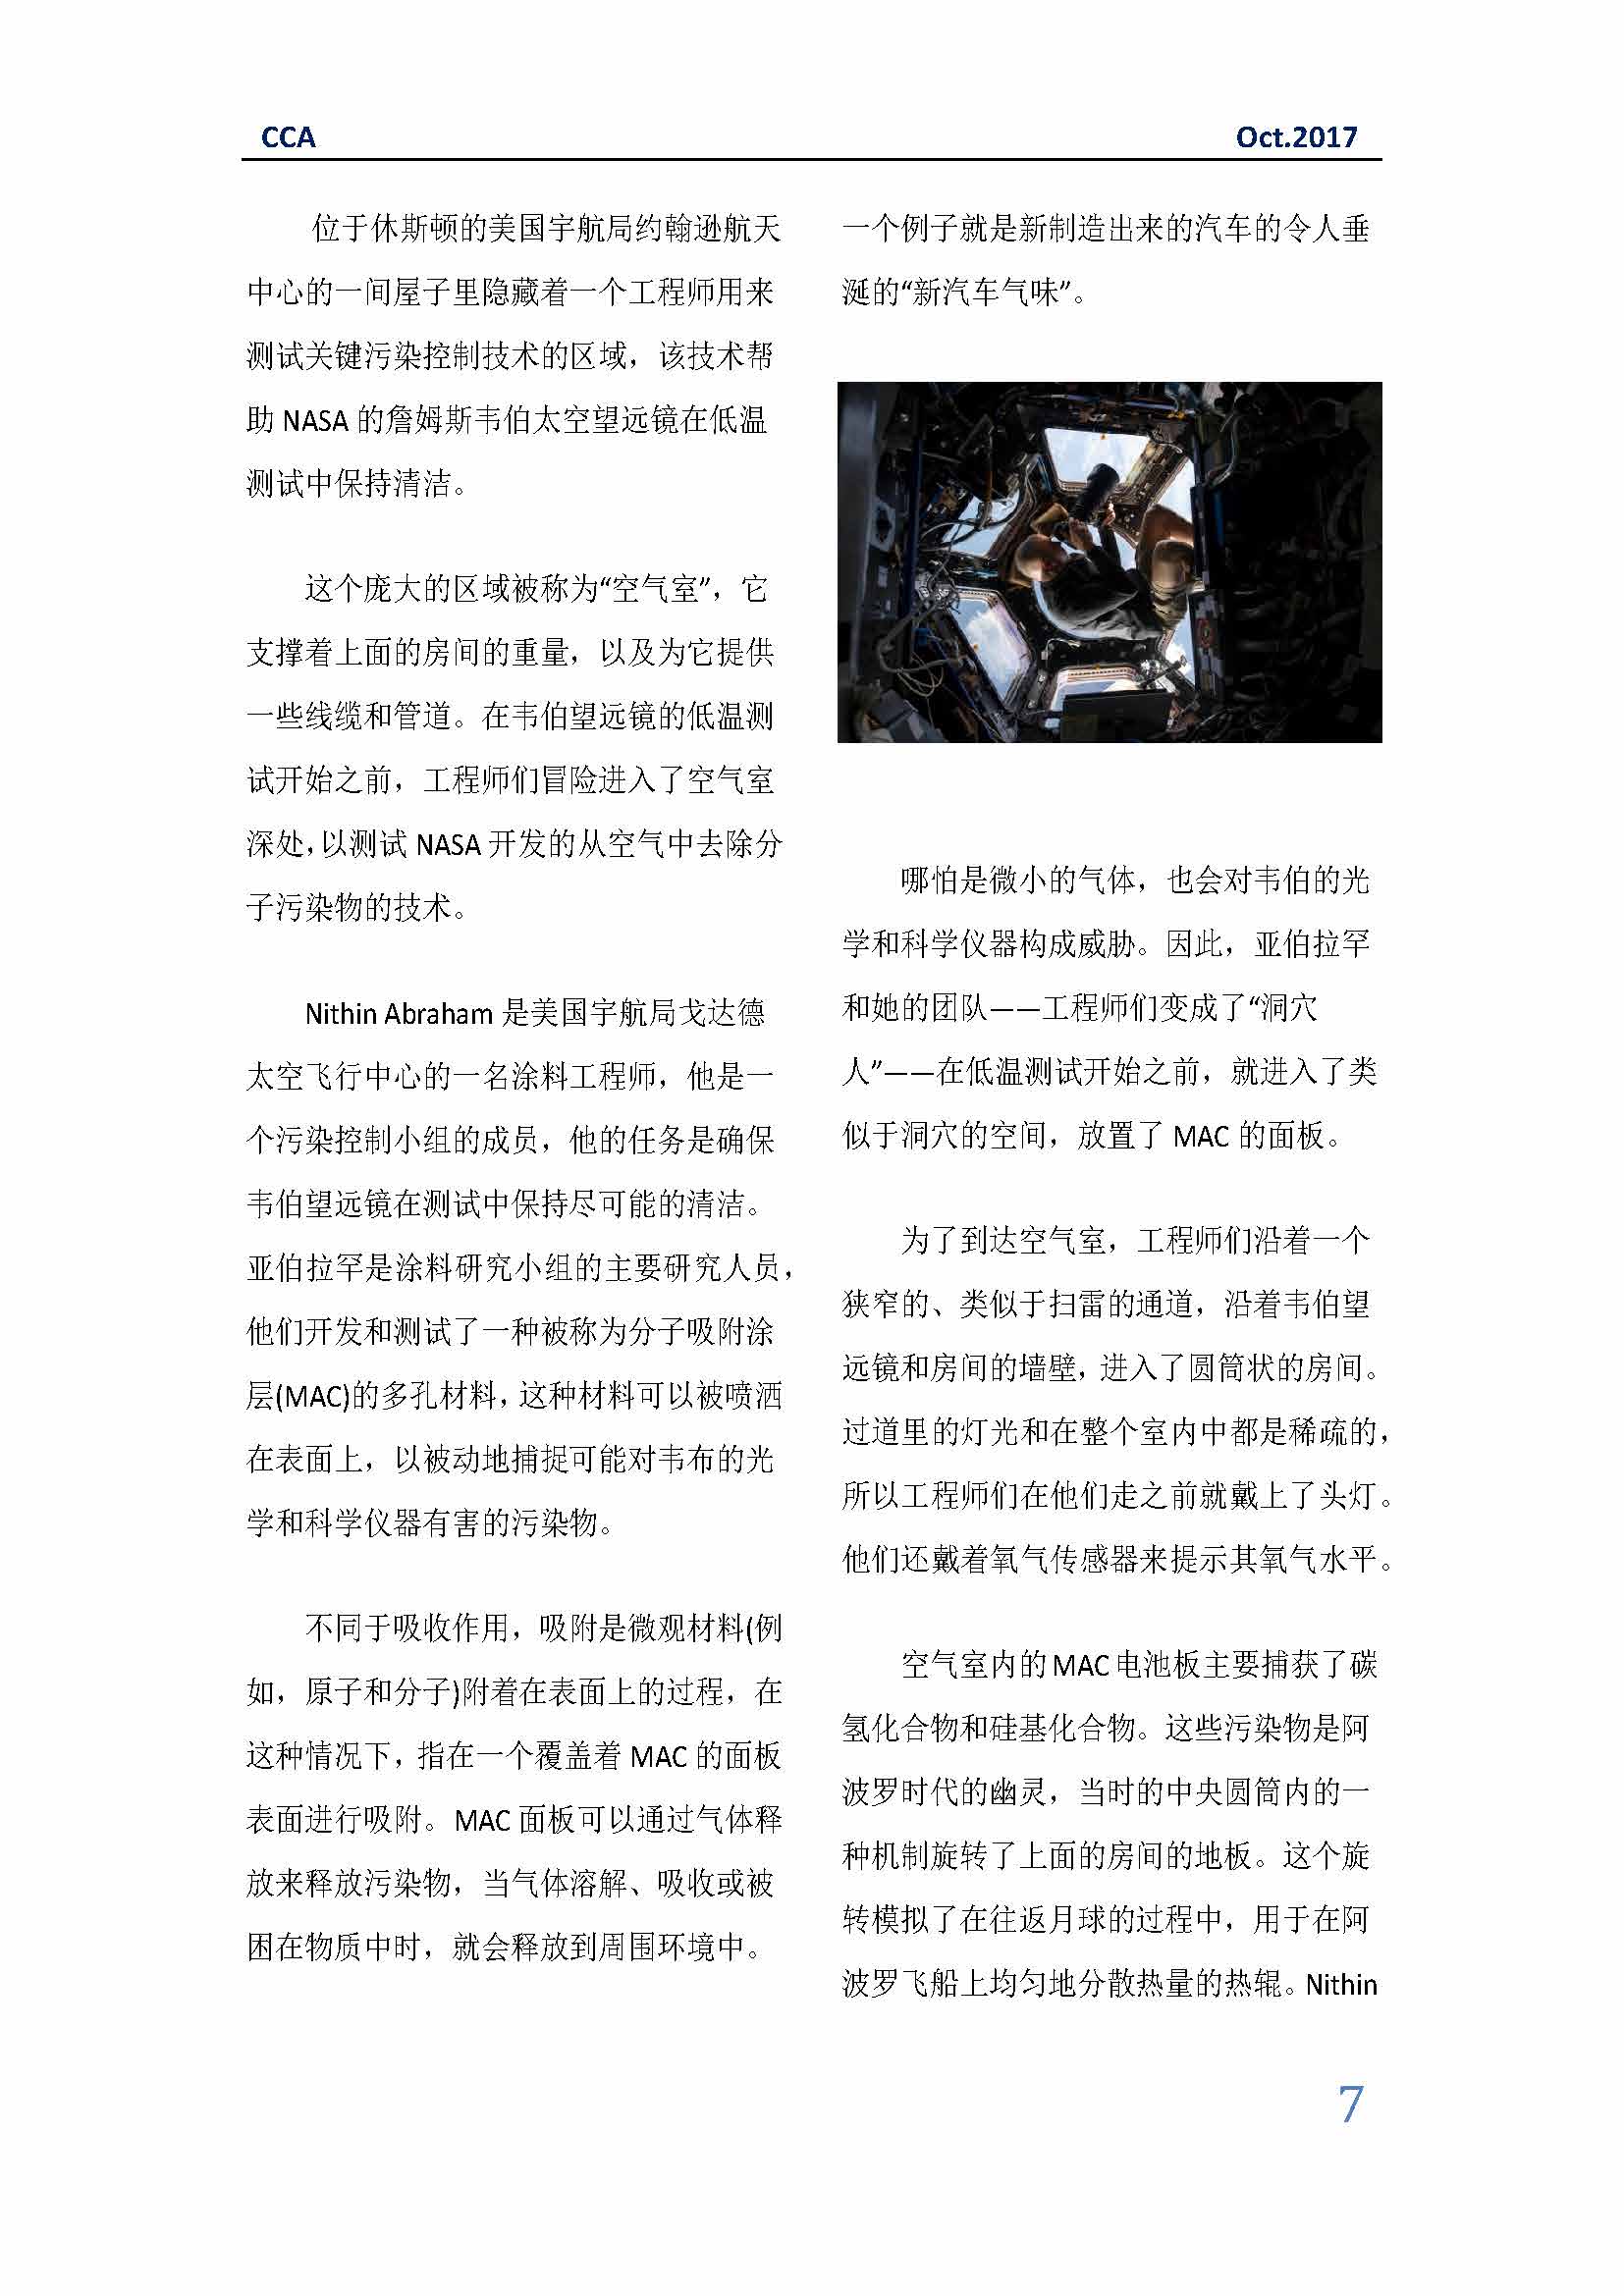 中国科技咨询协会国际快讯（第三十期）_页面_07.jpg